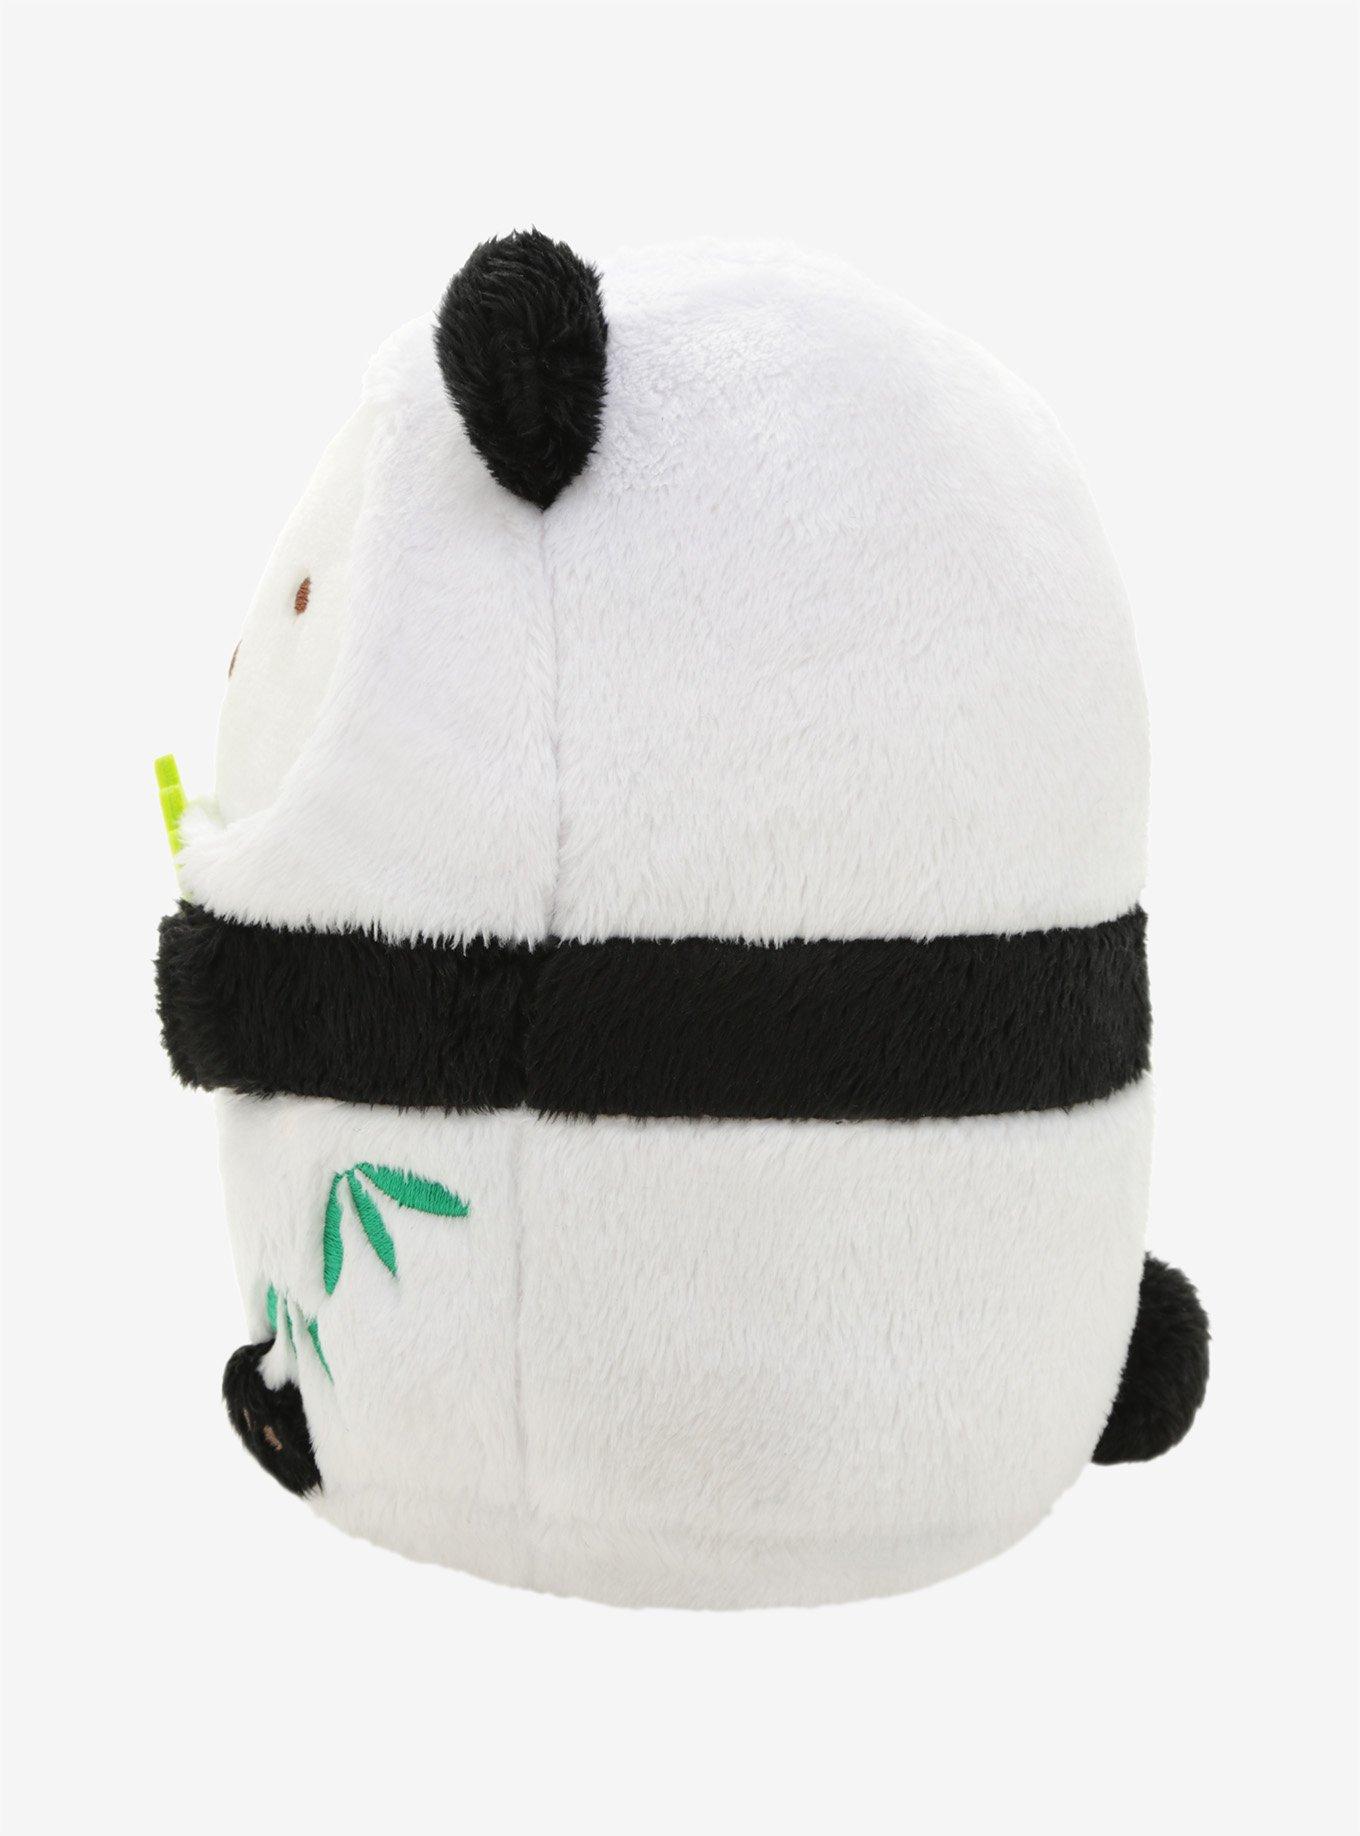 San-X Sumikko Gurashi 5th Anniversary Shirokuma Panda Plush, , alternate